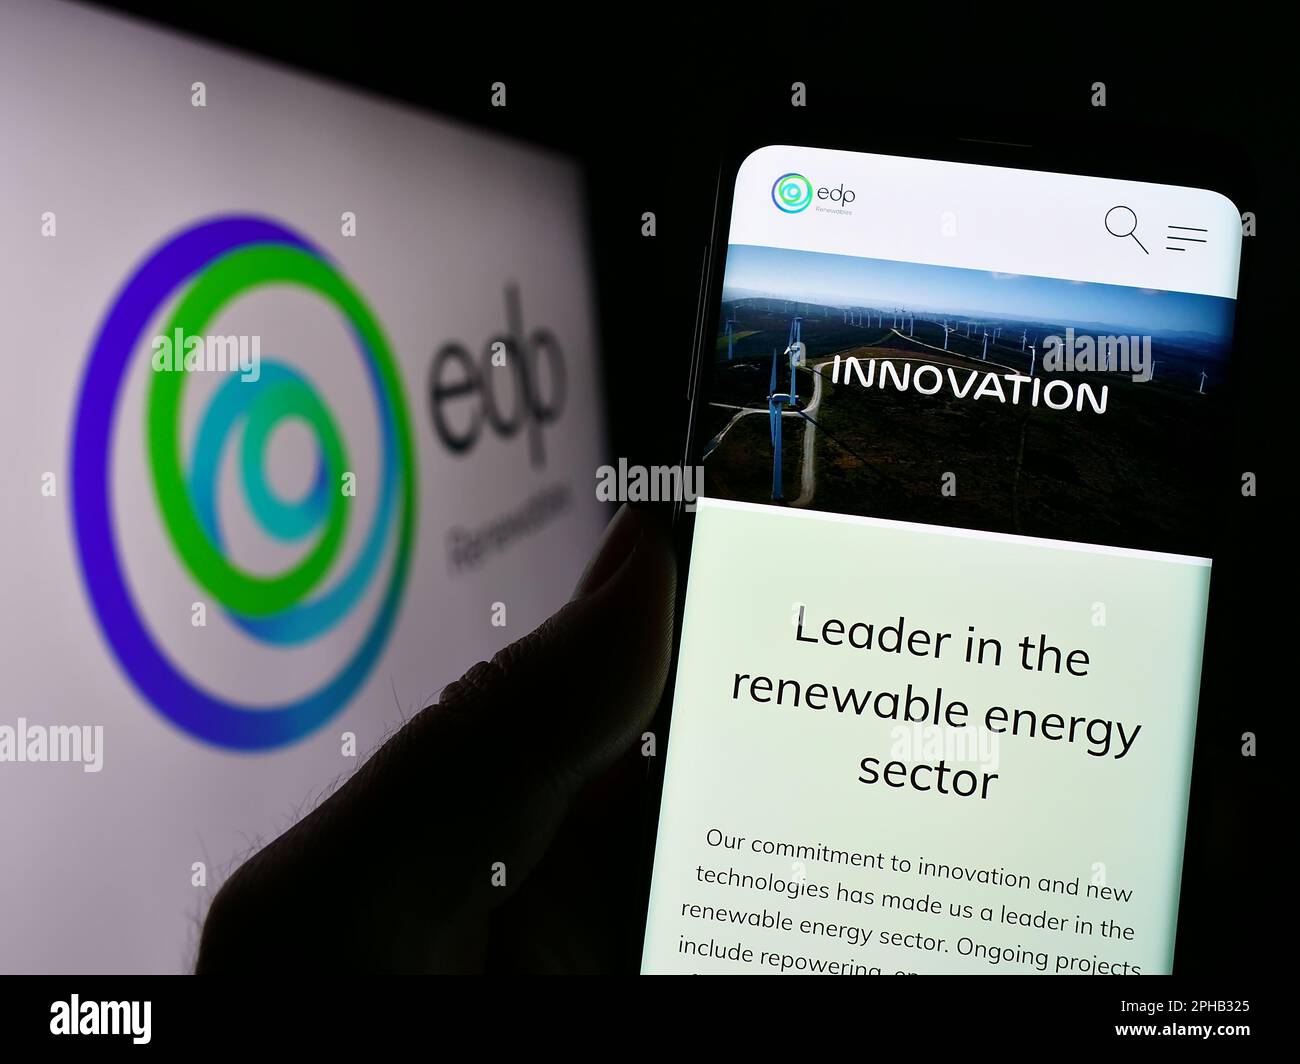 Persona in possesso di smartphone con pagina web della società spagnola di energia EDP Renovaveis S.A. (EDPR) sullo schermo con il logo. Messa a fuoco al centro del display del telefono. Foto Stock